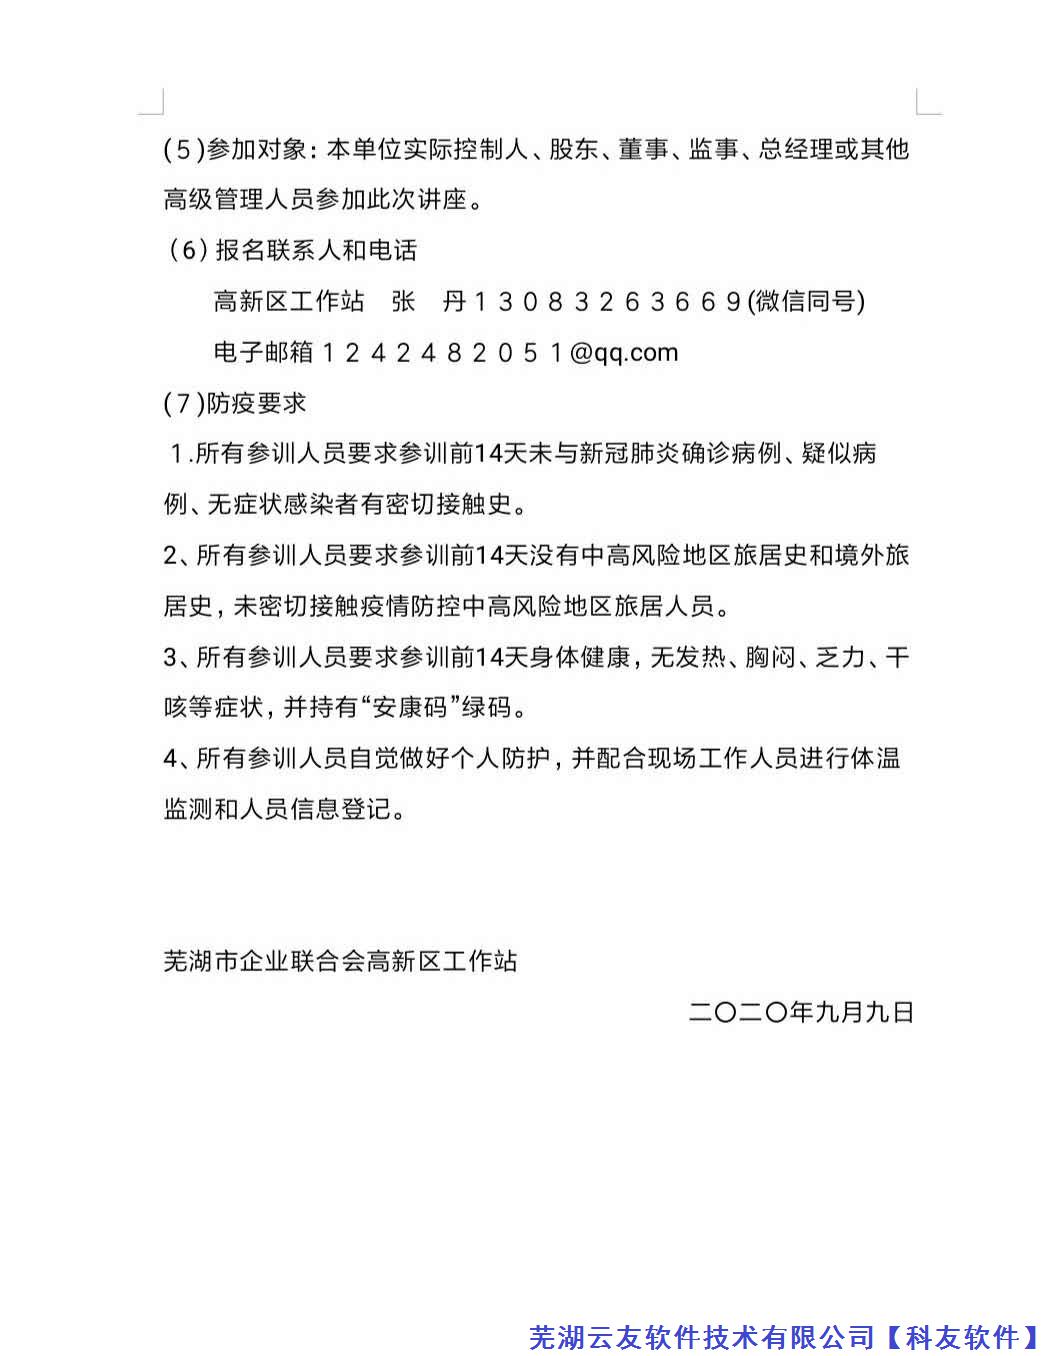 芜湖市企业联合会高新区主办交流会通知